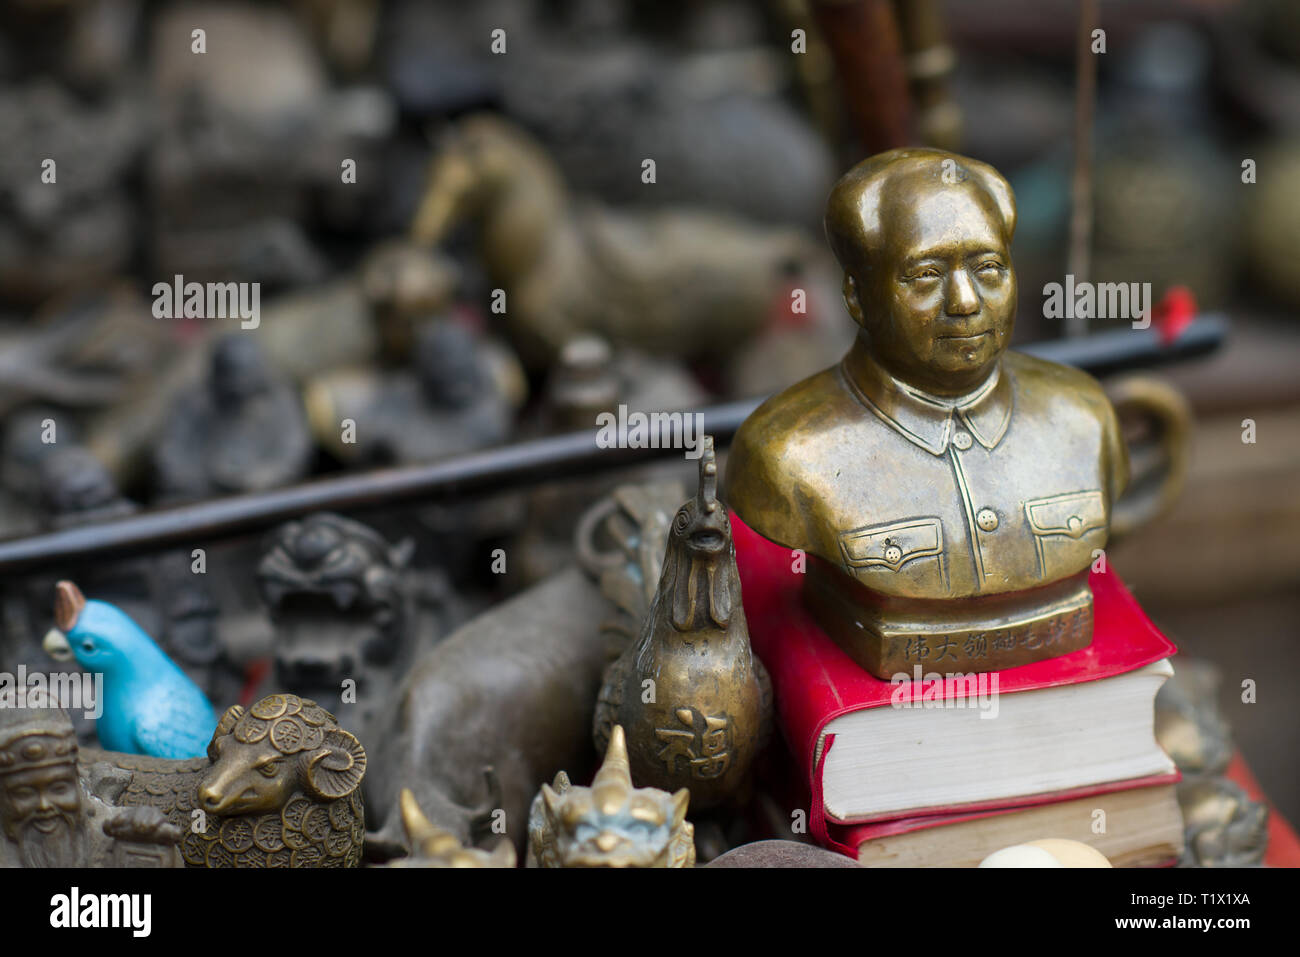 Pingyao, China - 08 13 2016: Vintage y bronce chino antiguo gran líder Mao Zedong Busto Cabeza pequeña estatua en un mercado callejero de Pingyao, China Foto de stock